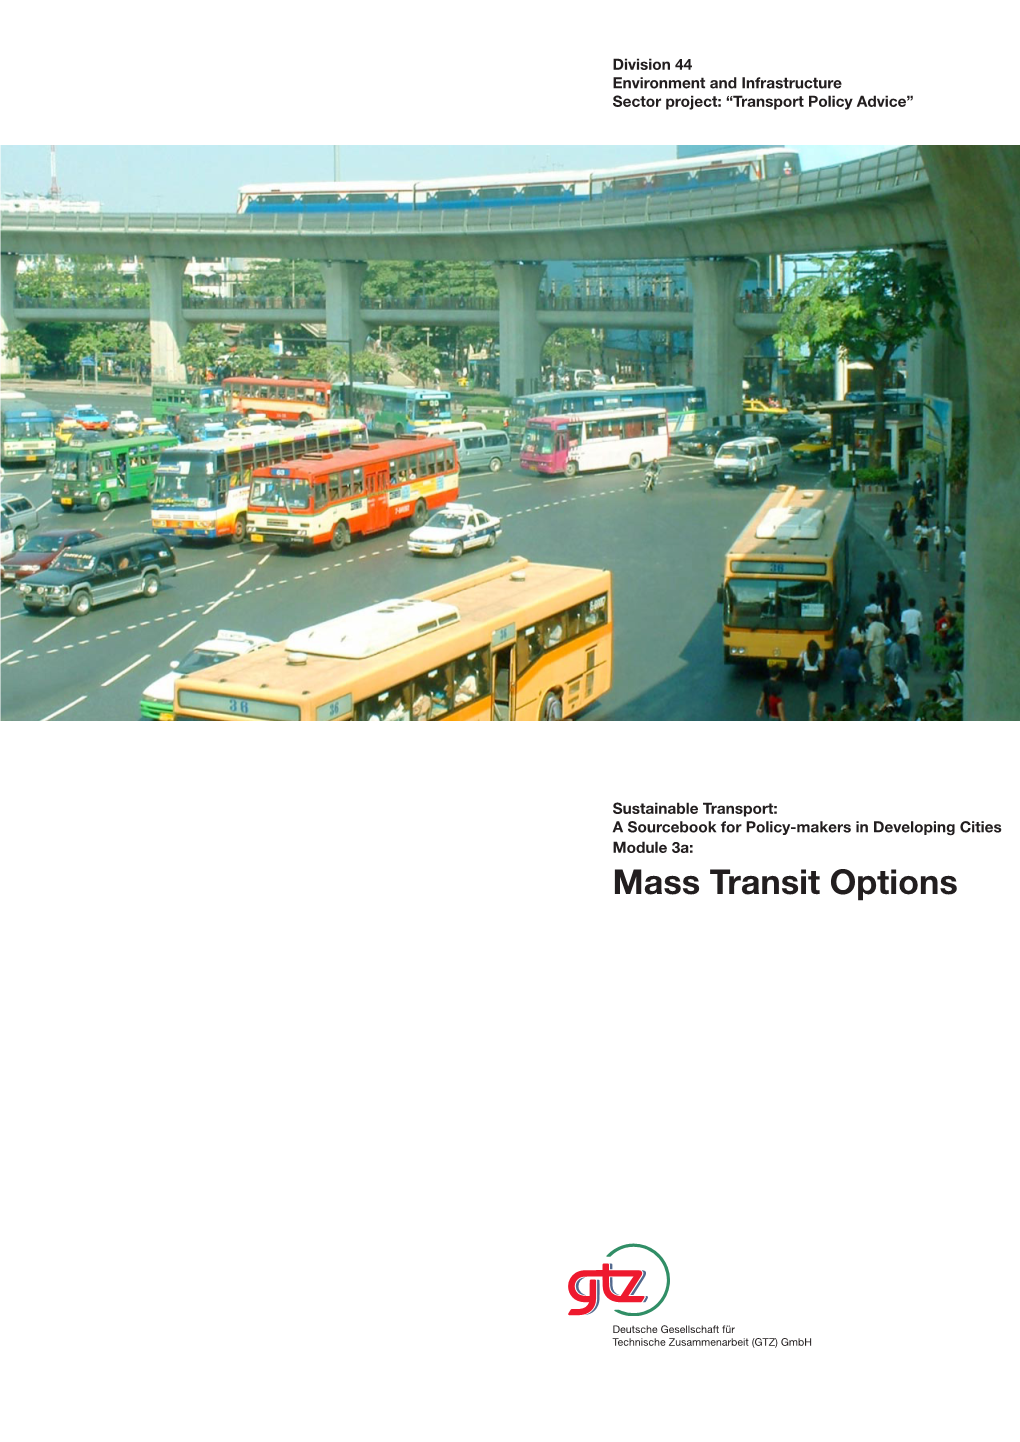 Mass Transit Options